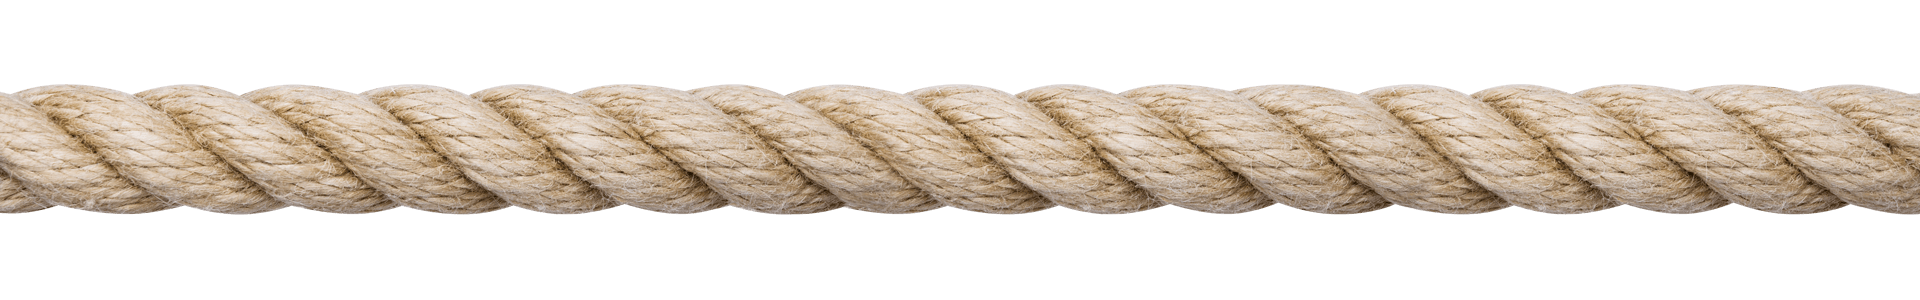 Southern Ropes' Hemptex - Synthetic Hemp Rope